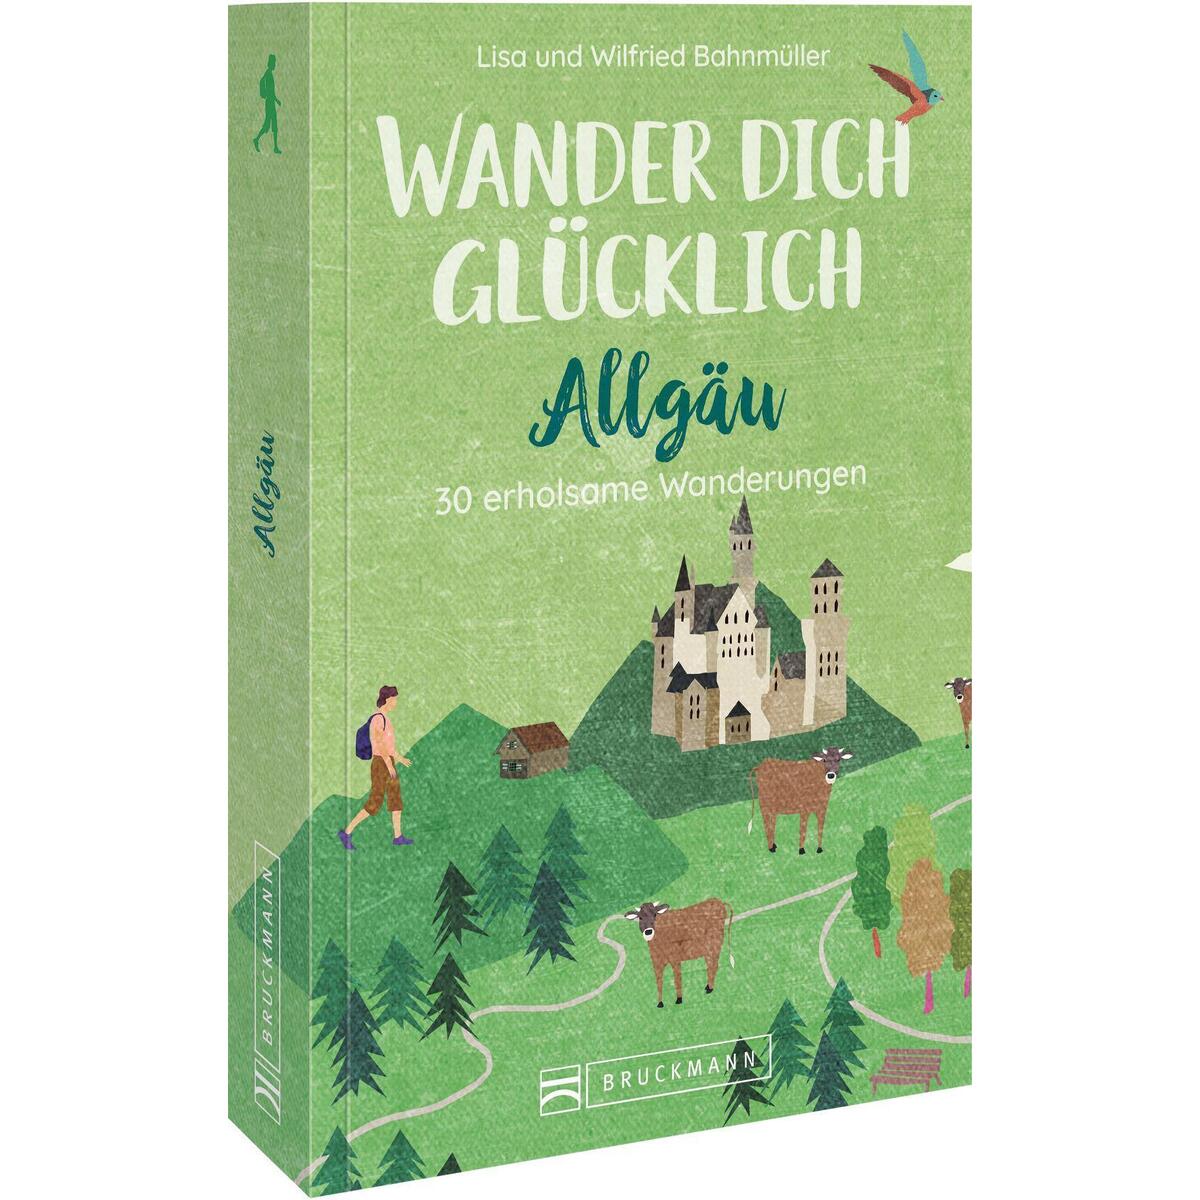 Wander dich glücklich - Allgäu von Bruckmann Verlag GmbH